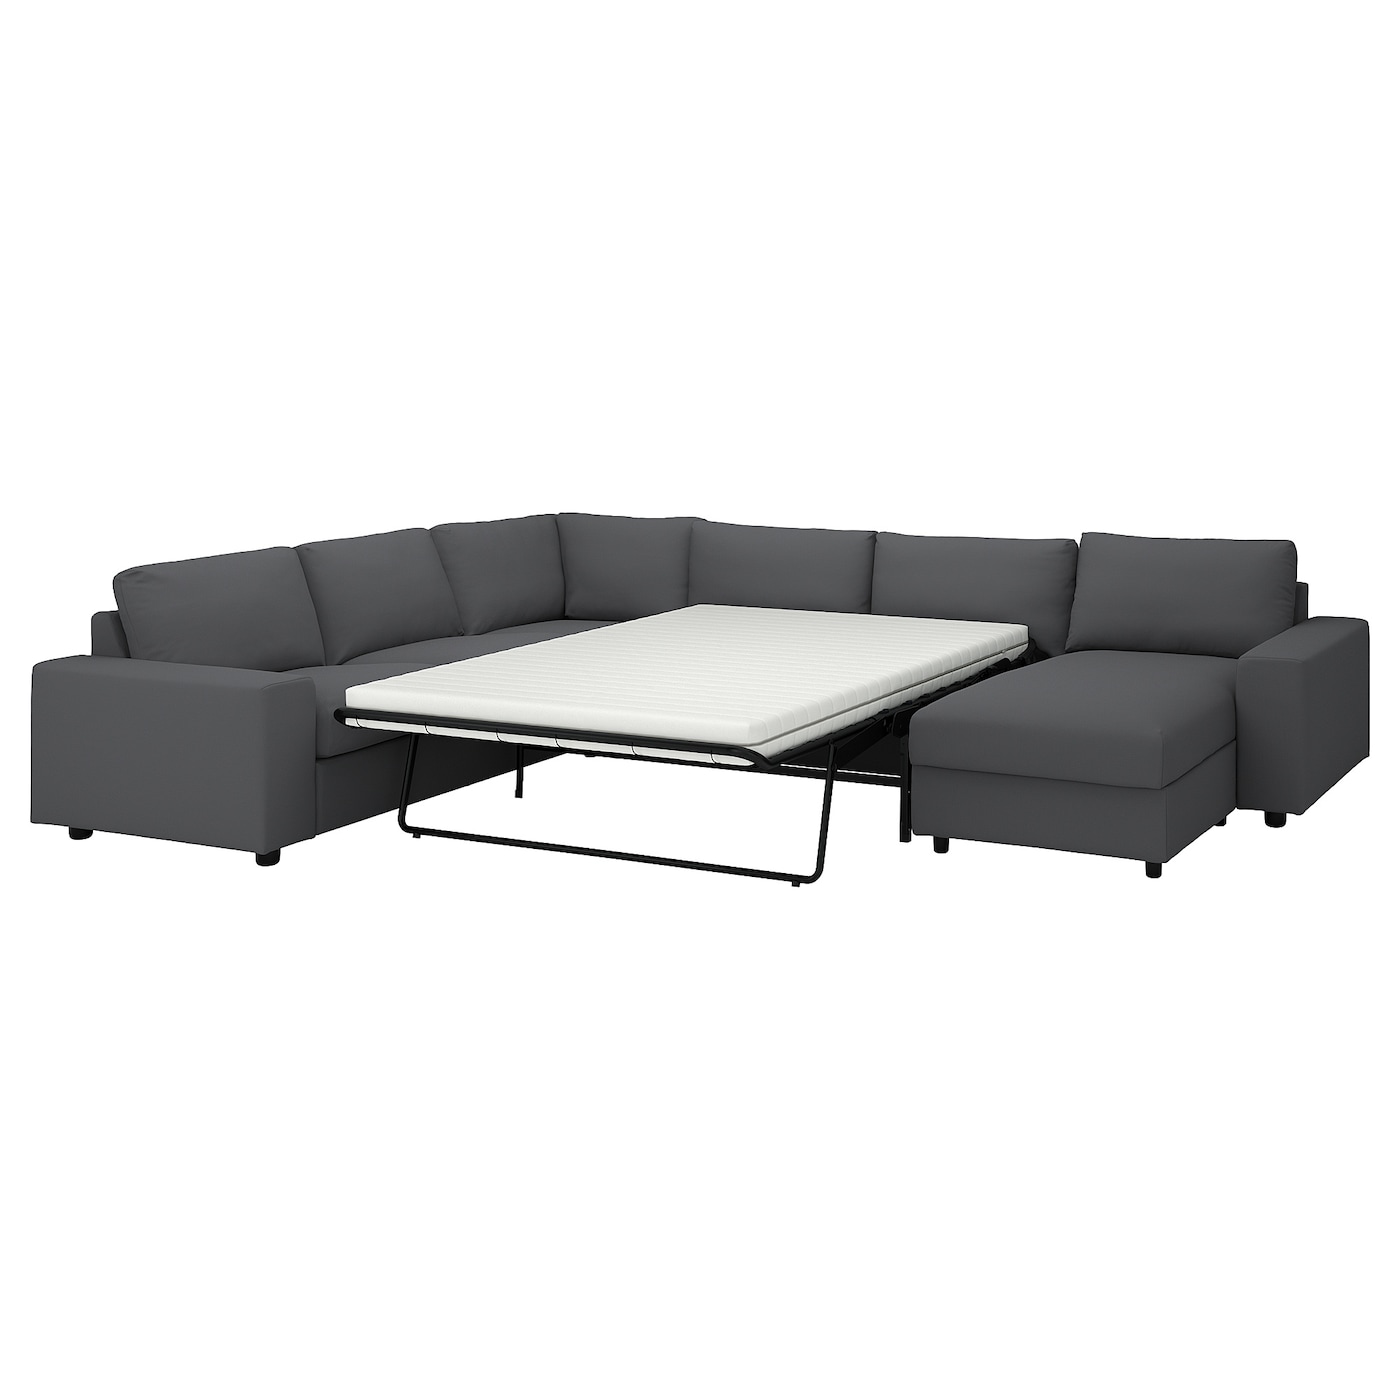 ВИМЛЕ 5-местный, диван-кровать угловой раздел., с широкими подлокотниками/Халларп серый VIMLE IKEA